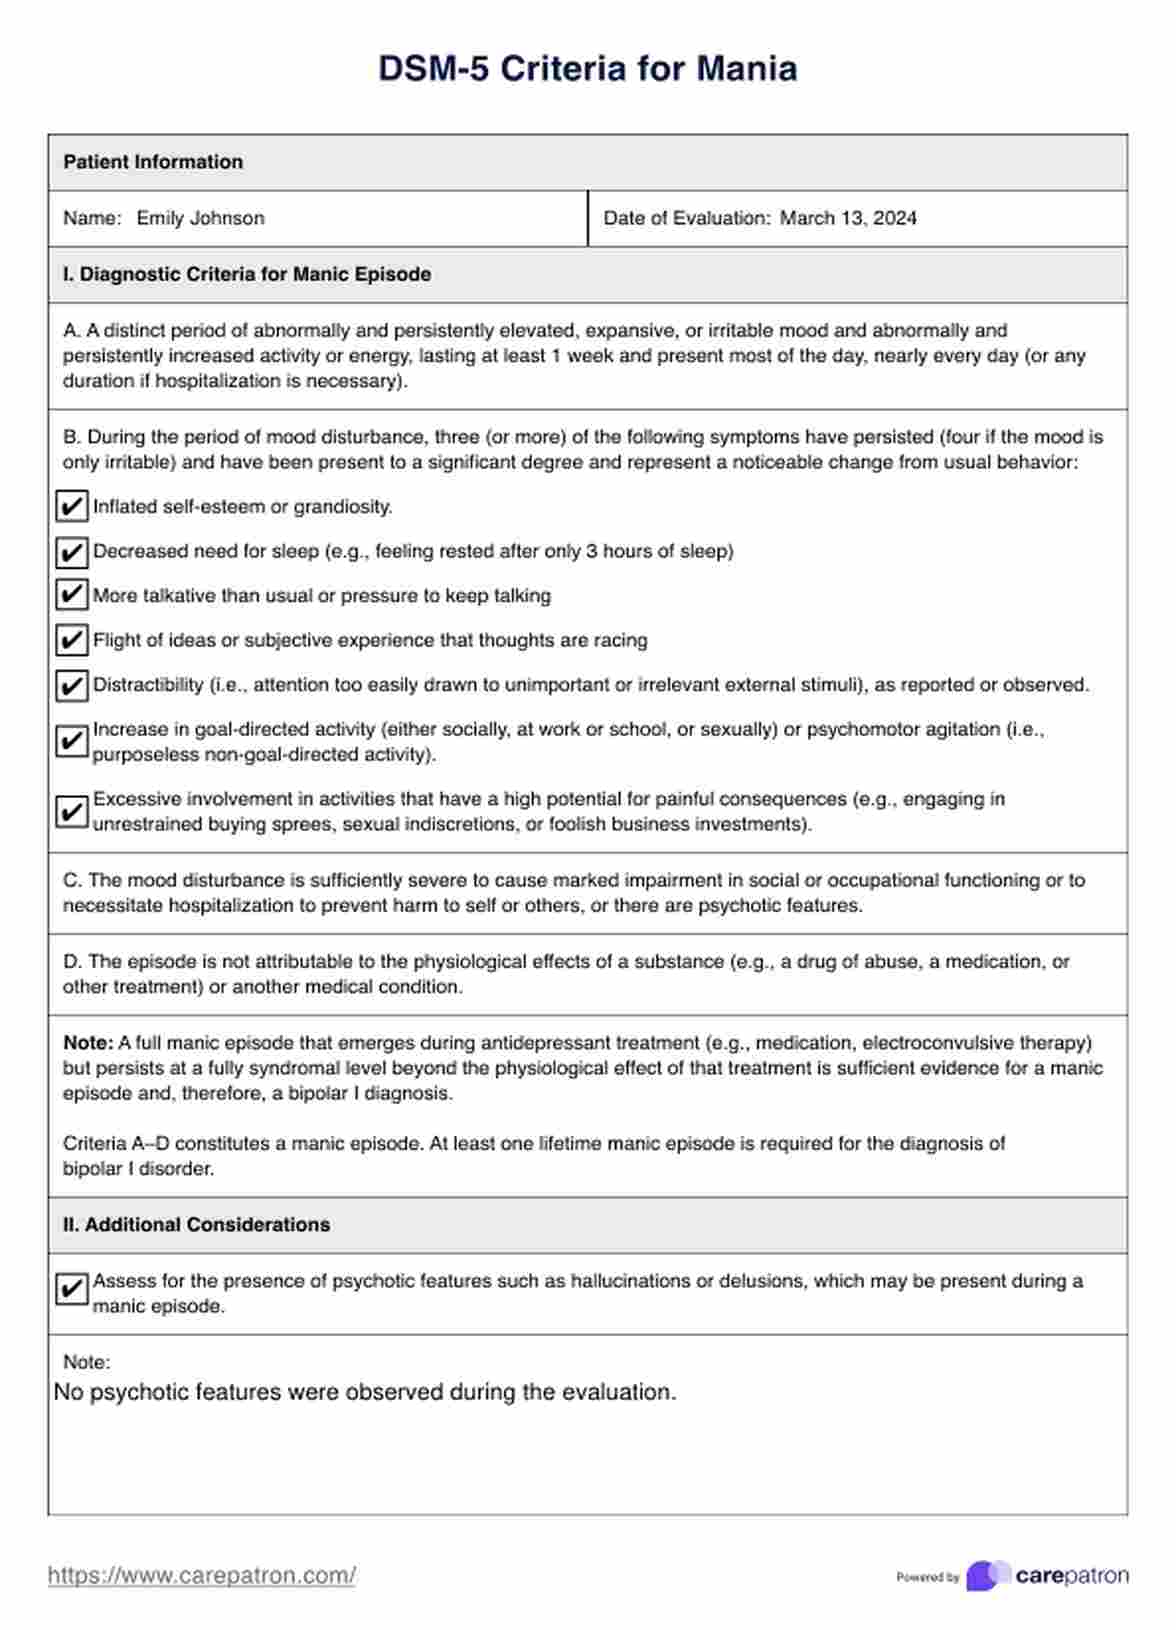 DSM-5 Criteria for Mania PDF Example